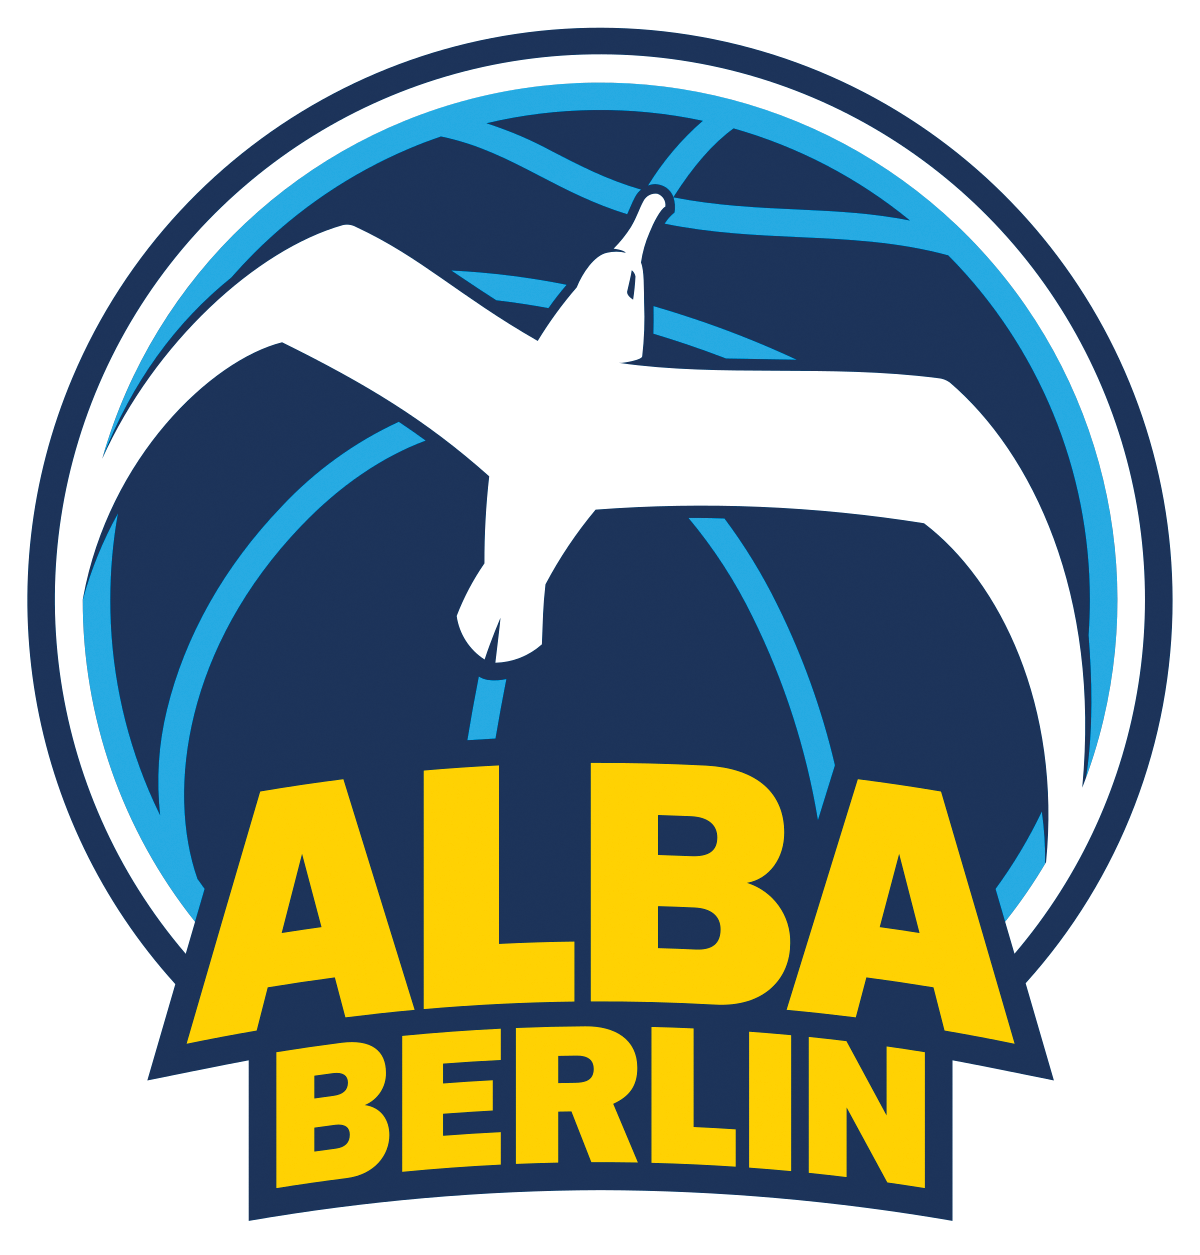 ALBA BERLIN